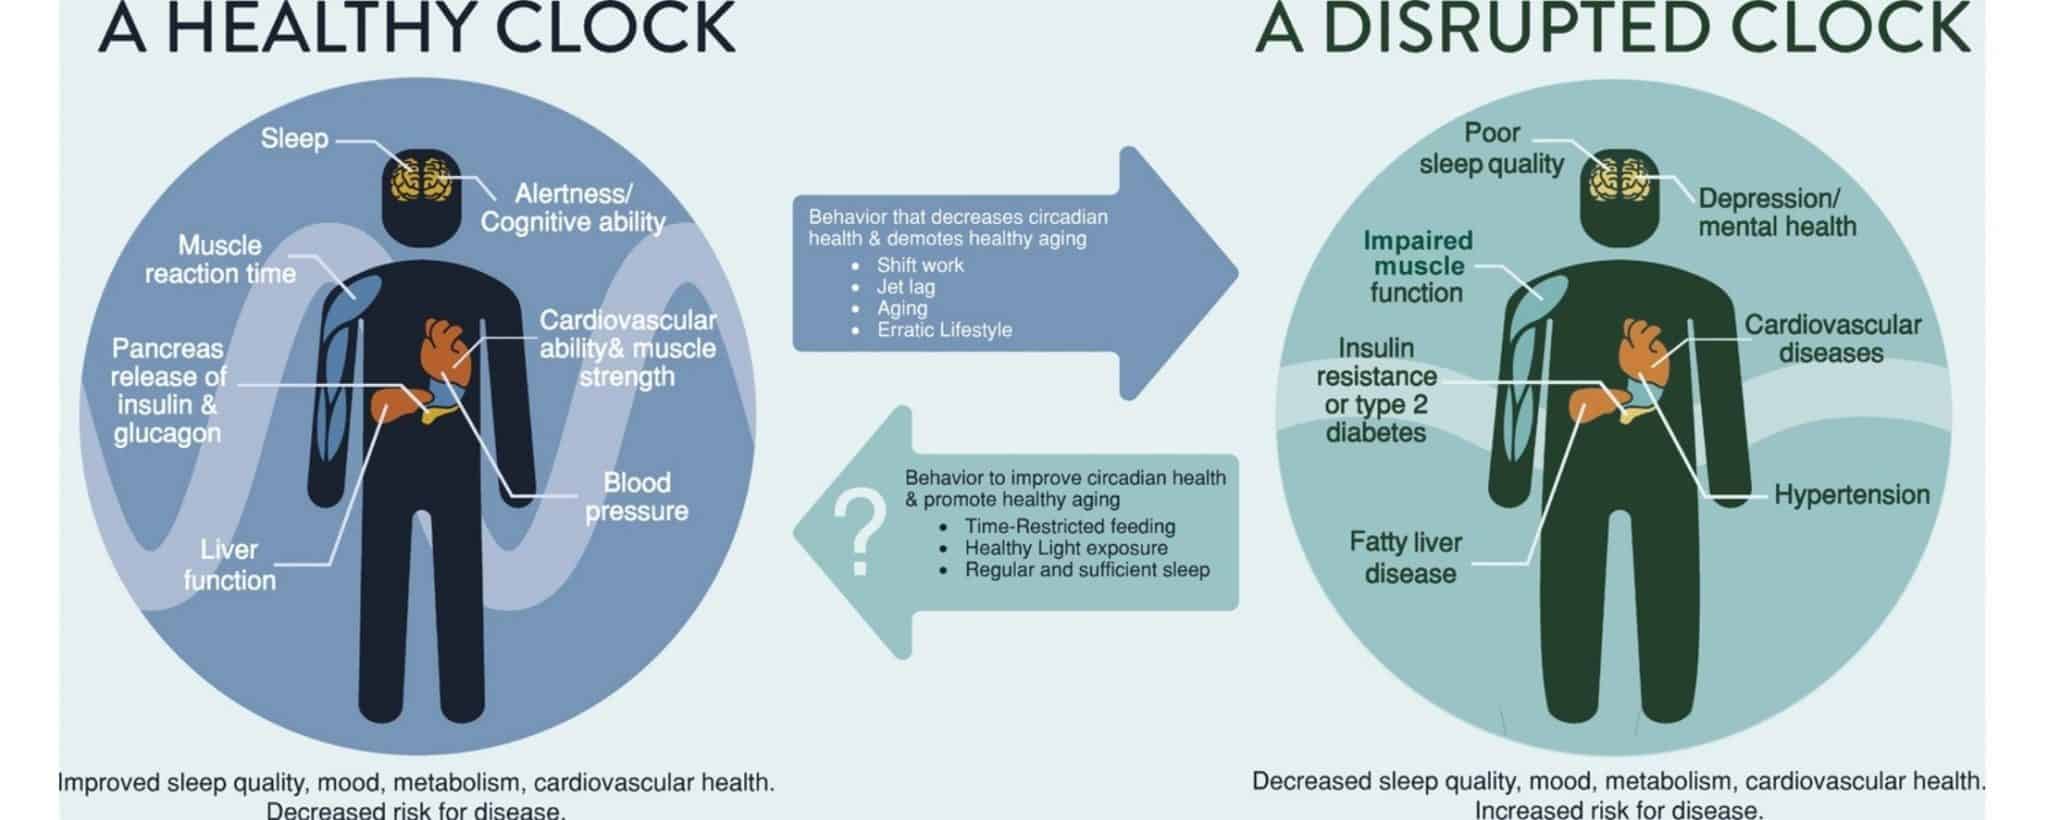 Healthy and unhealthy circadian clock